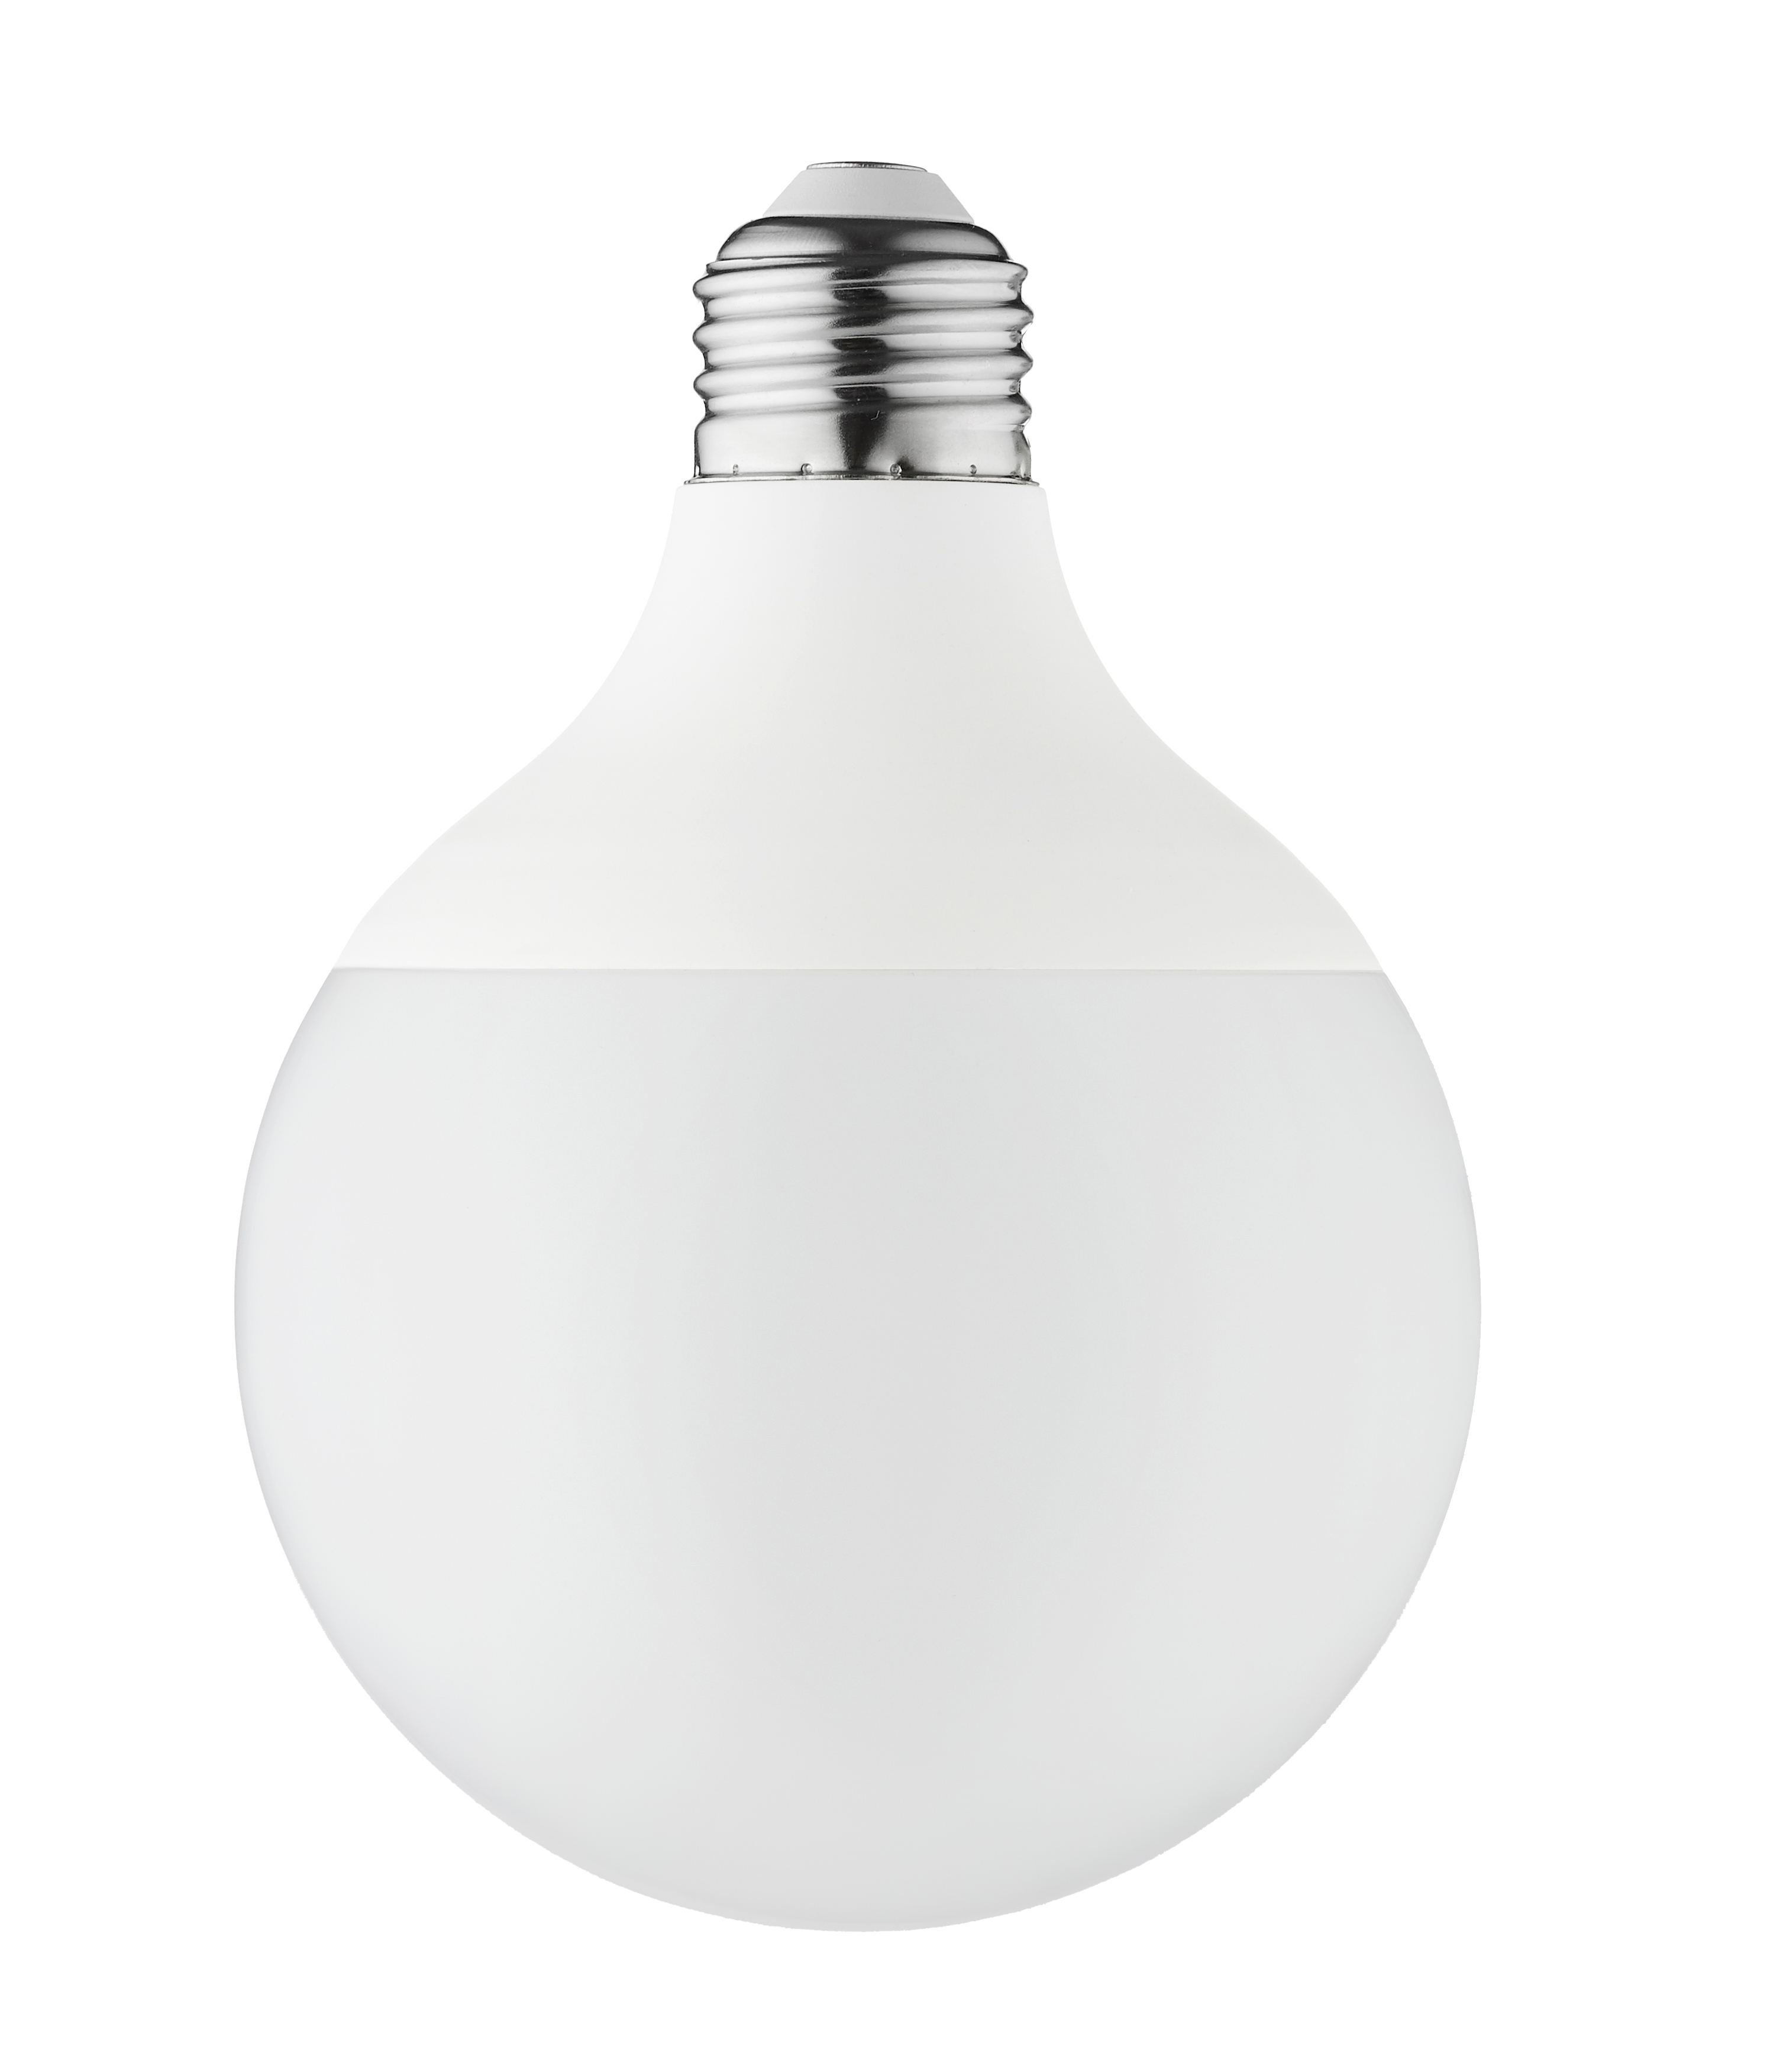 Some common sense lighting bulbs